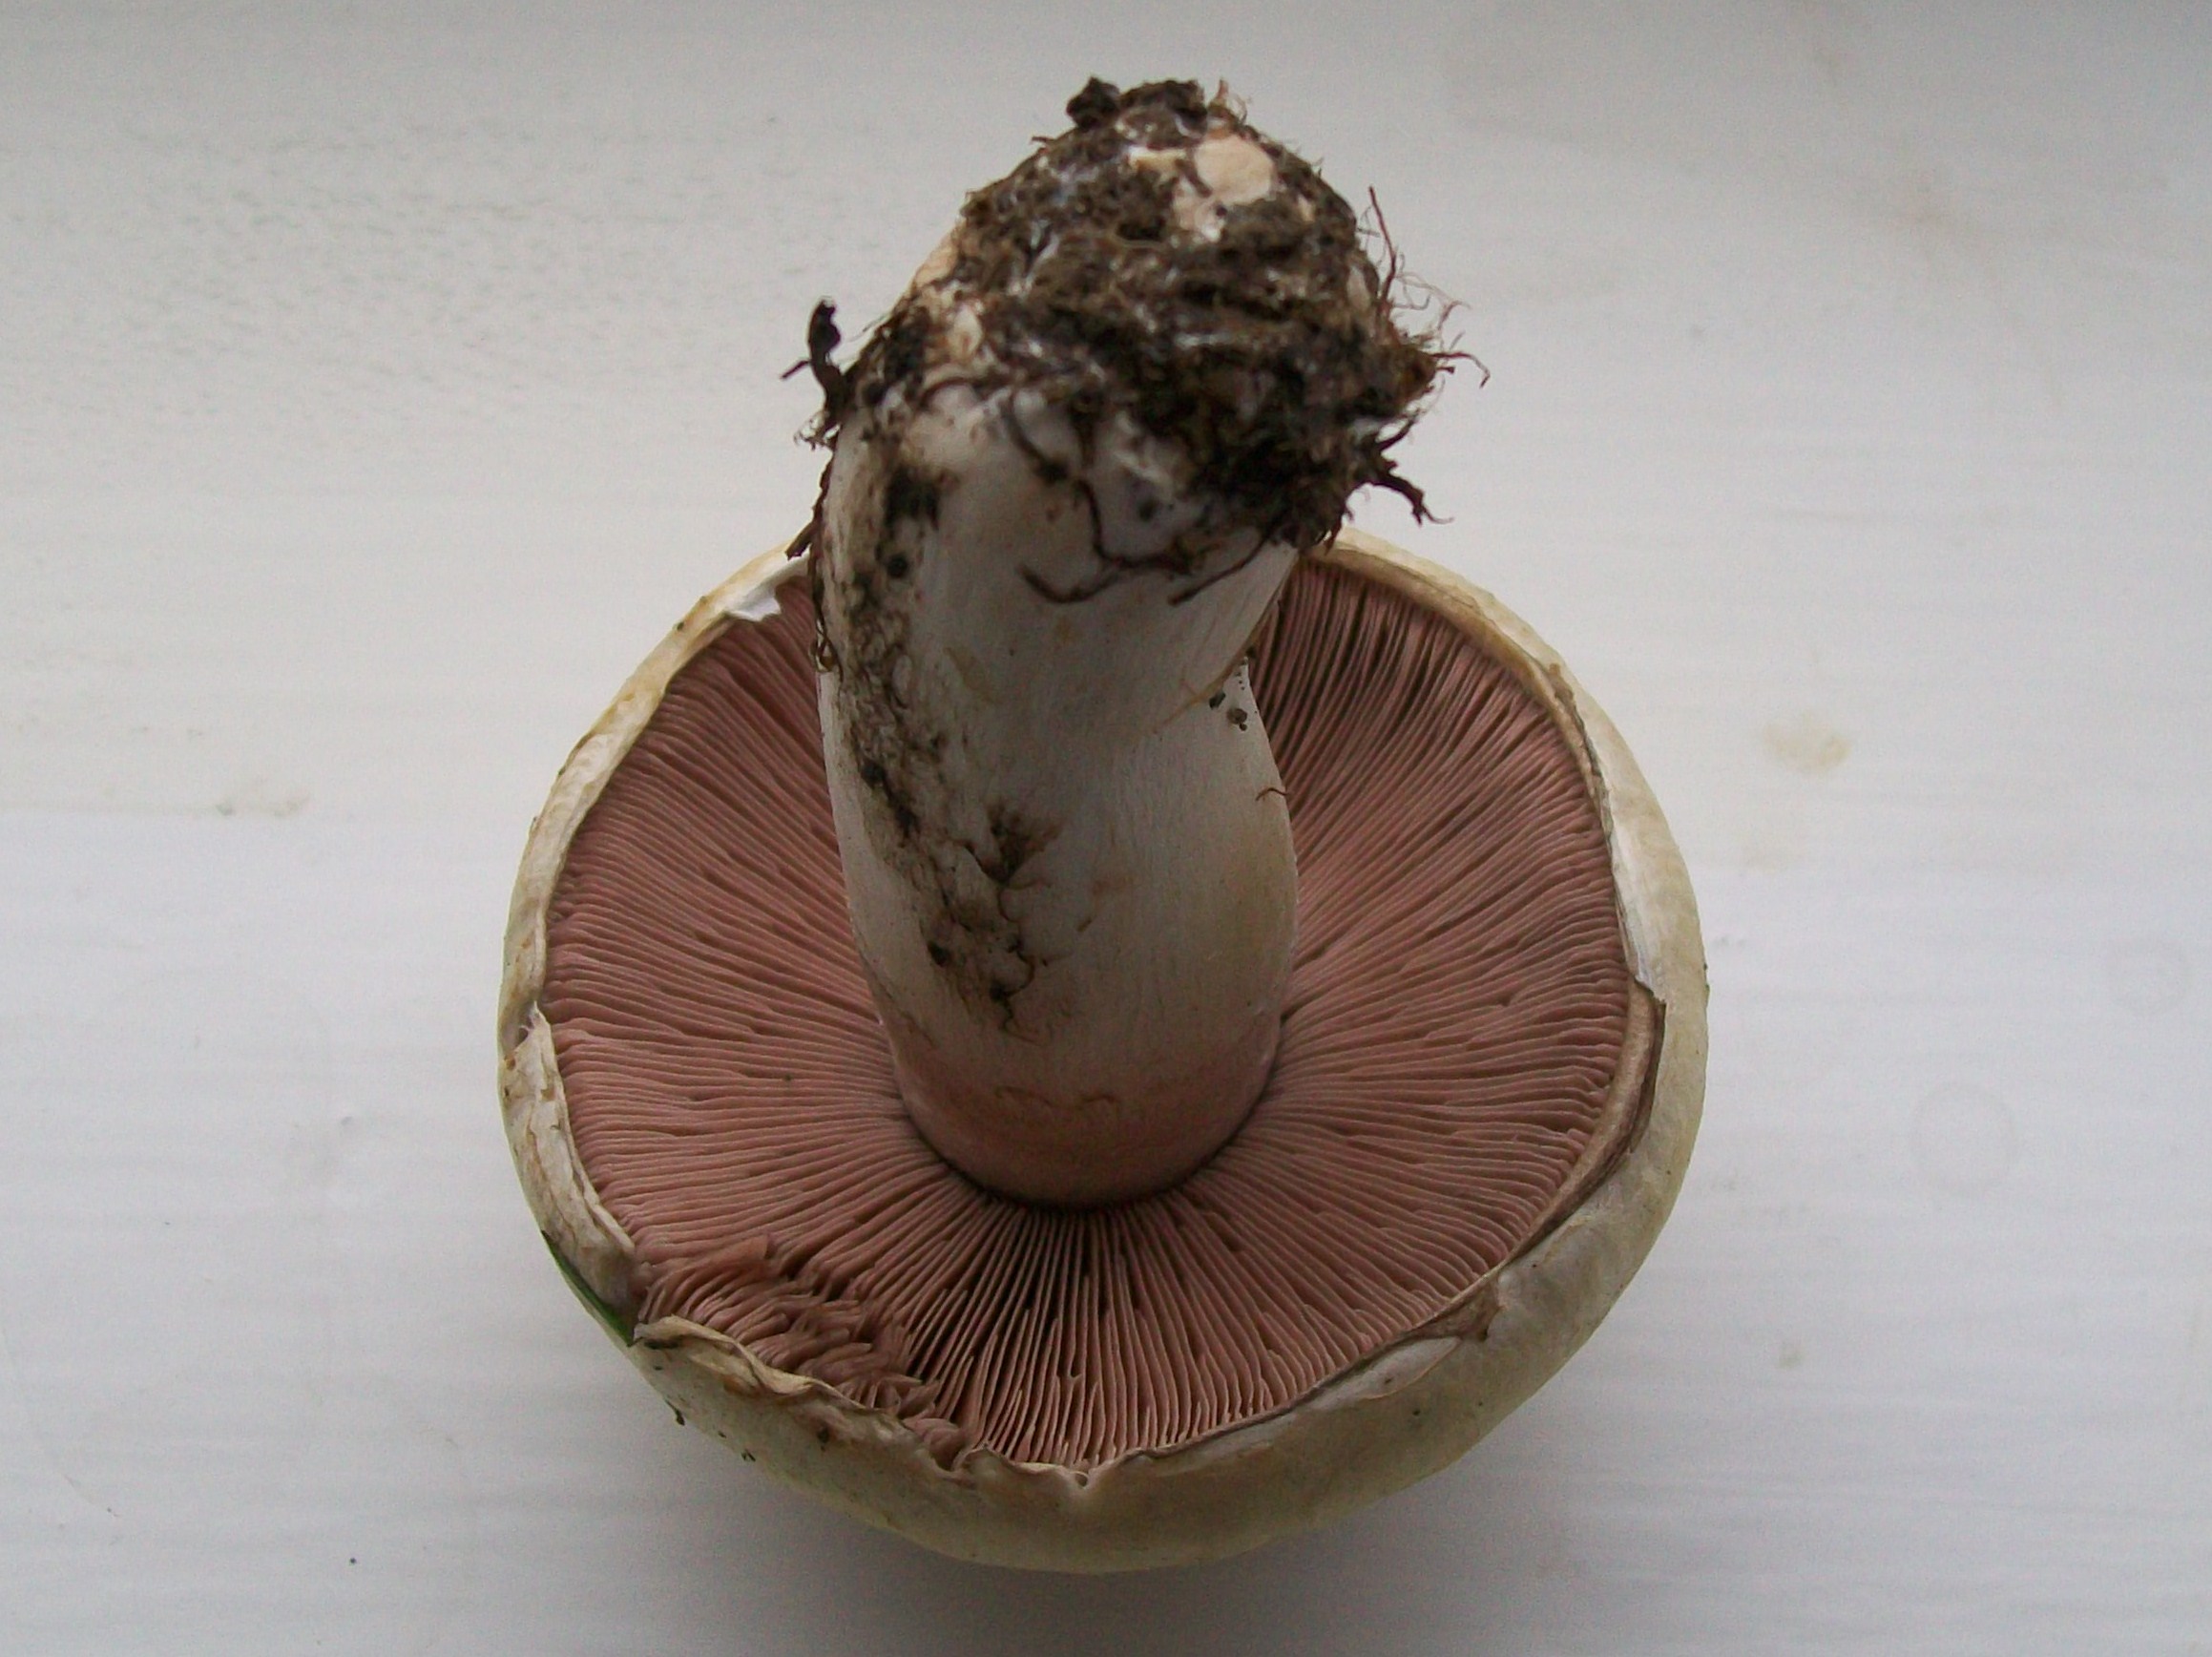 I picked this mushroom (3768691939)